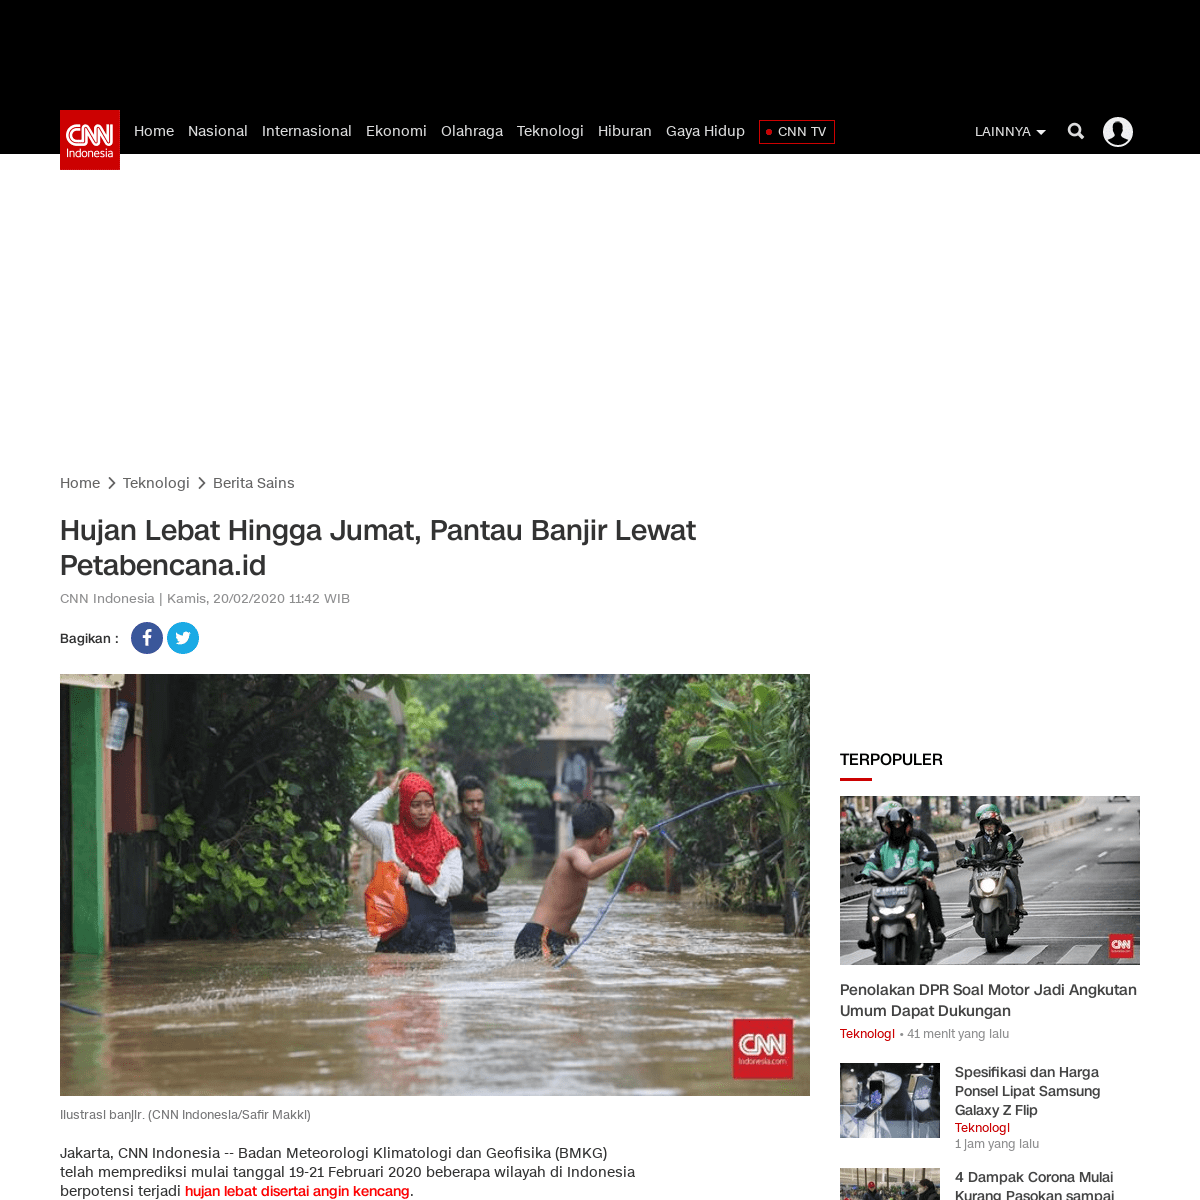 Hujan Lebat Hingga Jumat, Pantau Banjir Lewat Petabencana.id